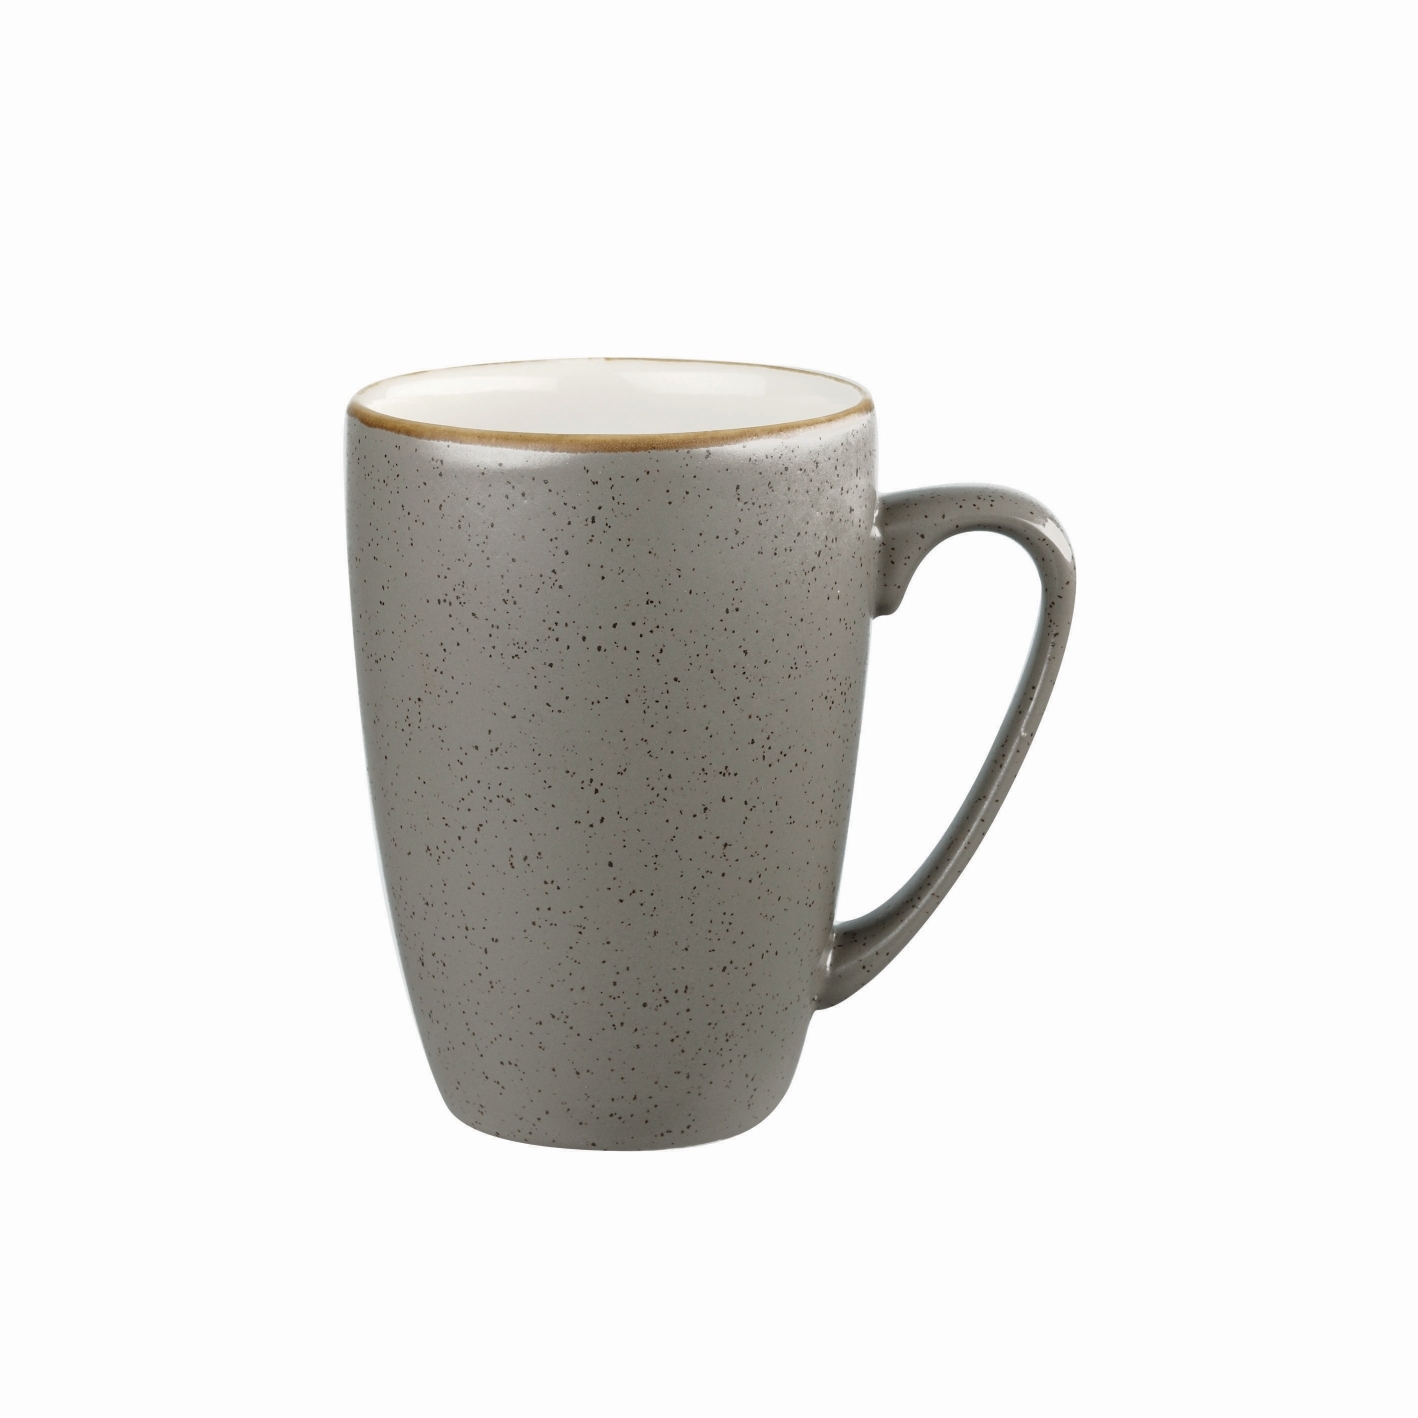 Obertasse Mug 32cl / Ø 8 / H 11cm, Peppercorn Grey